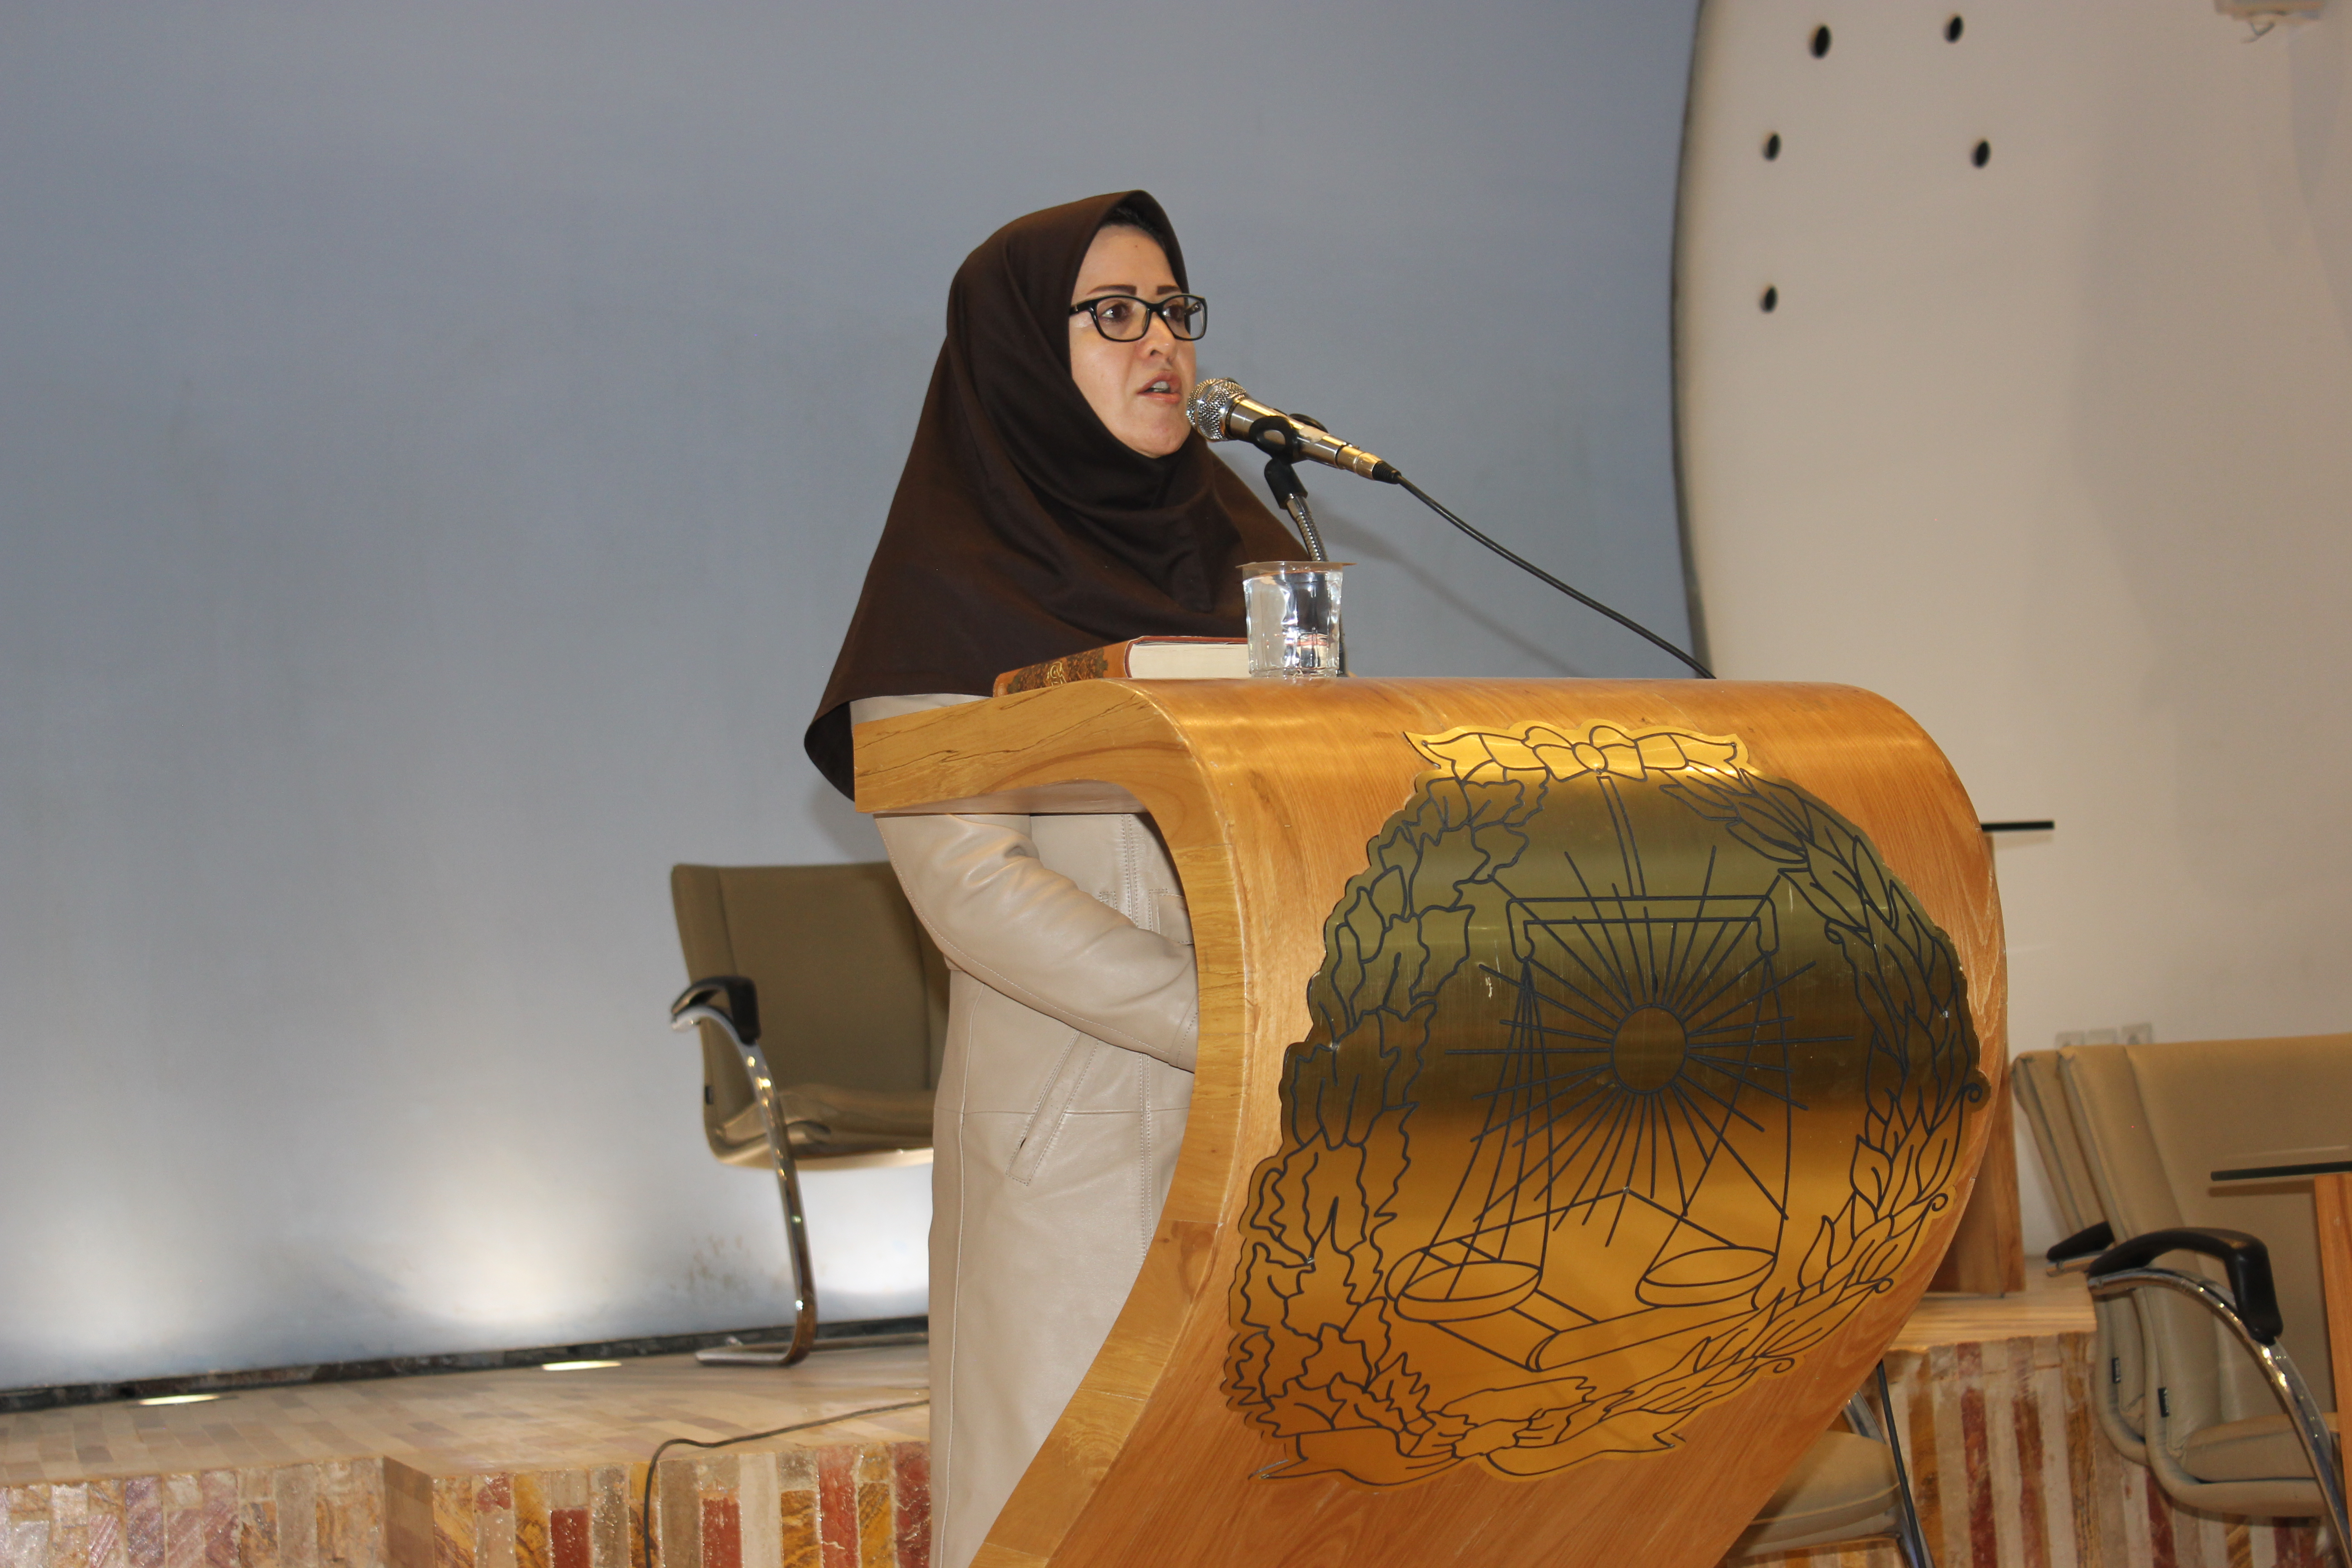 سخنان ریاست کانون وکلای اصفهان در نشست تخصصی "چالش های امروزین حوق بشر"